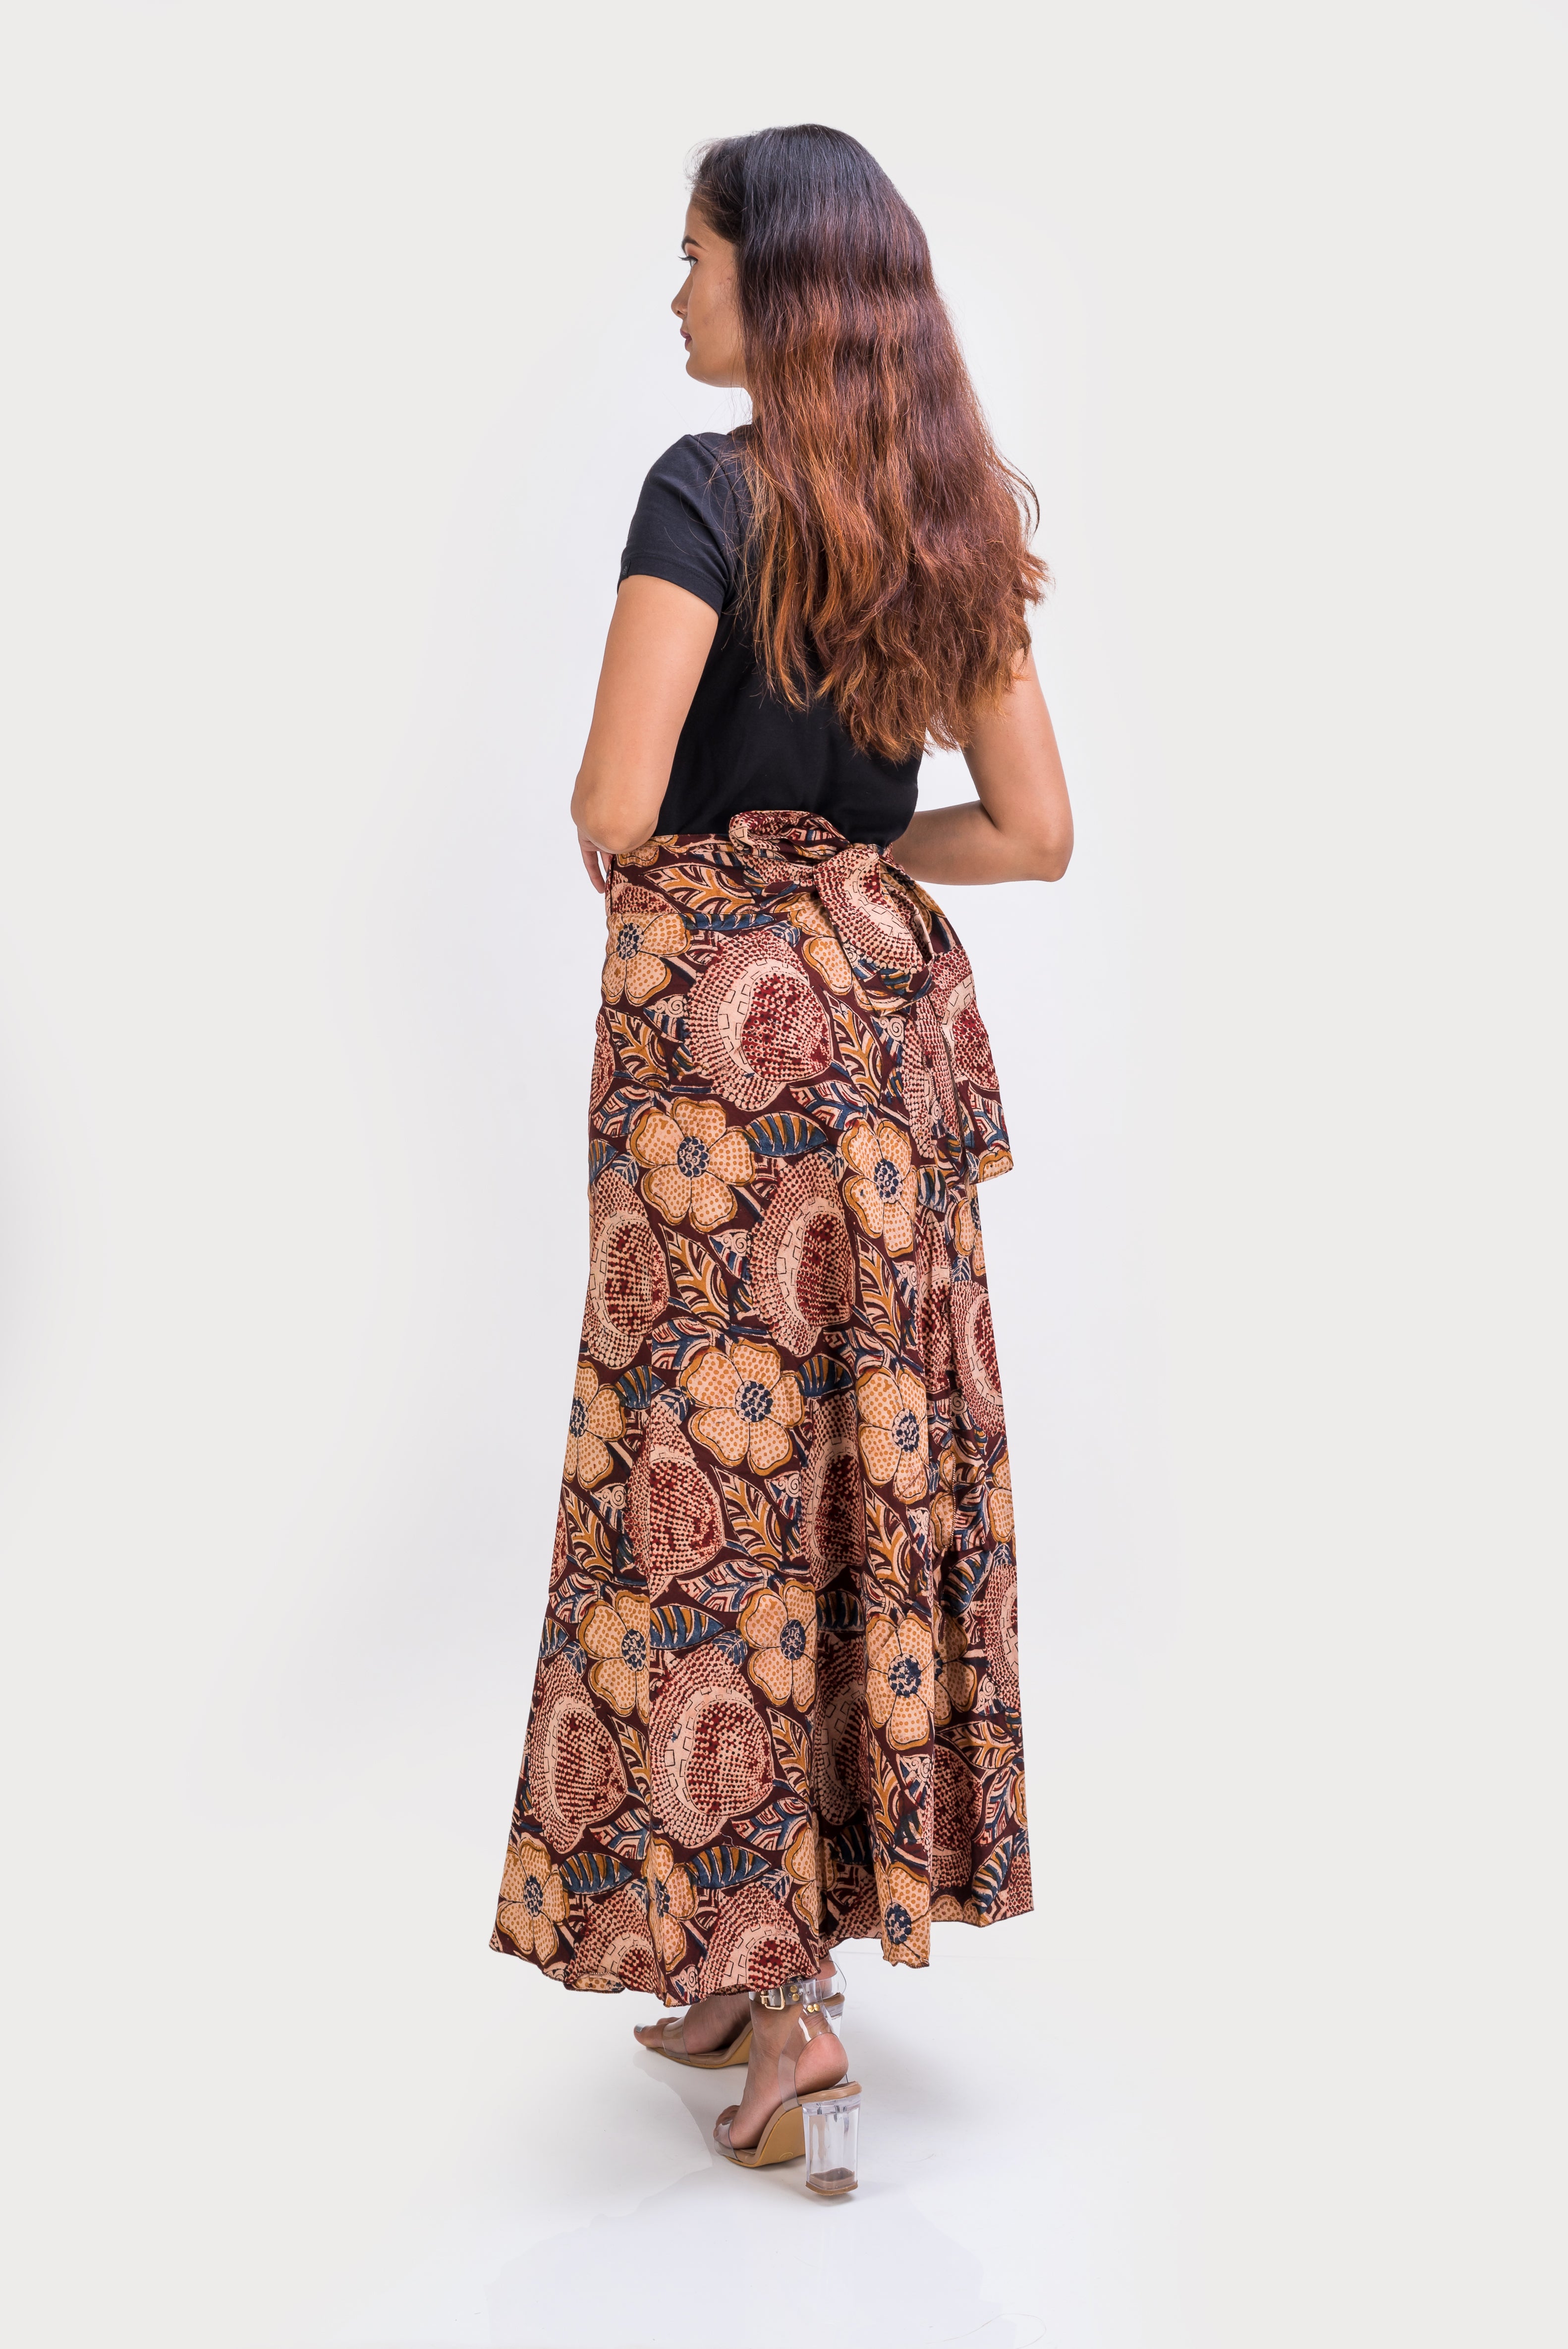 KK3018 "Wrap Skirt" - Brown Flowers